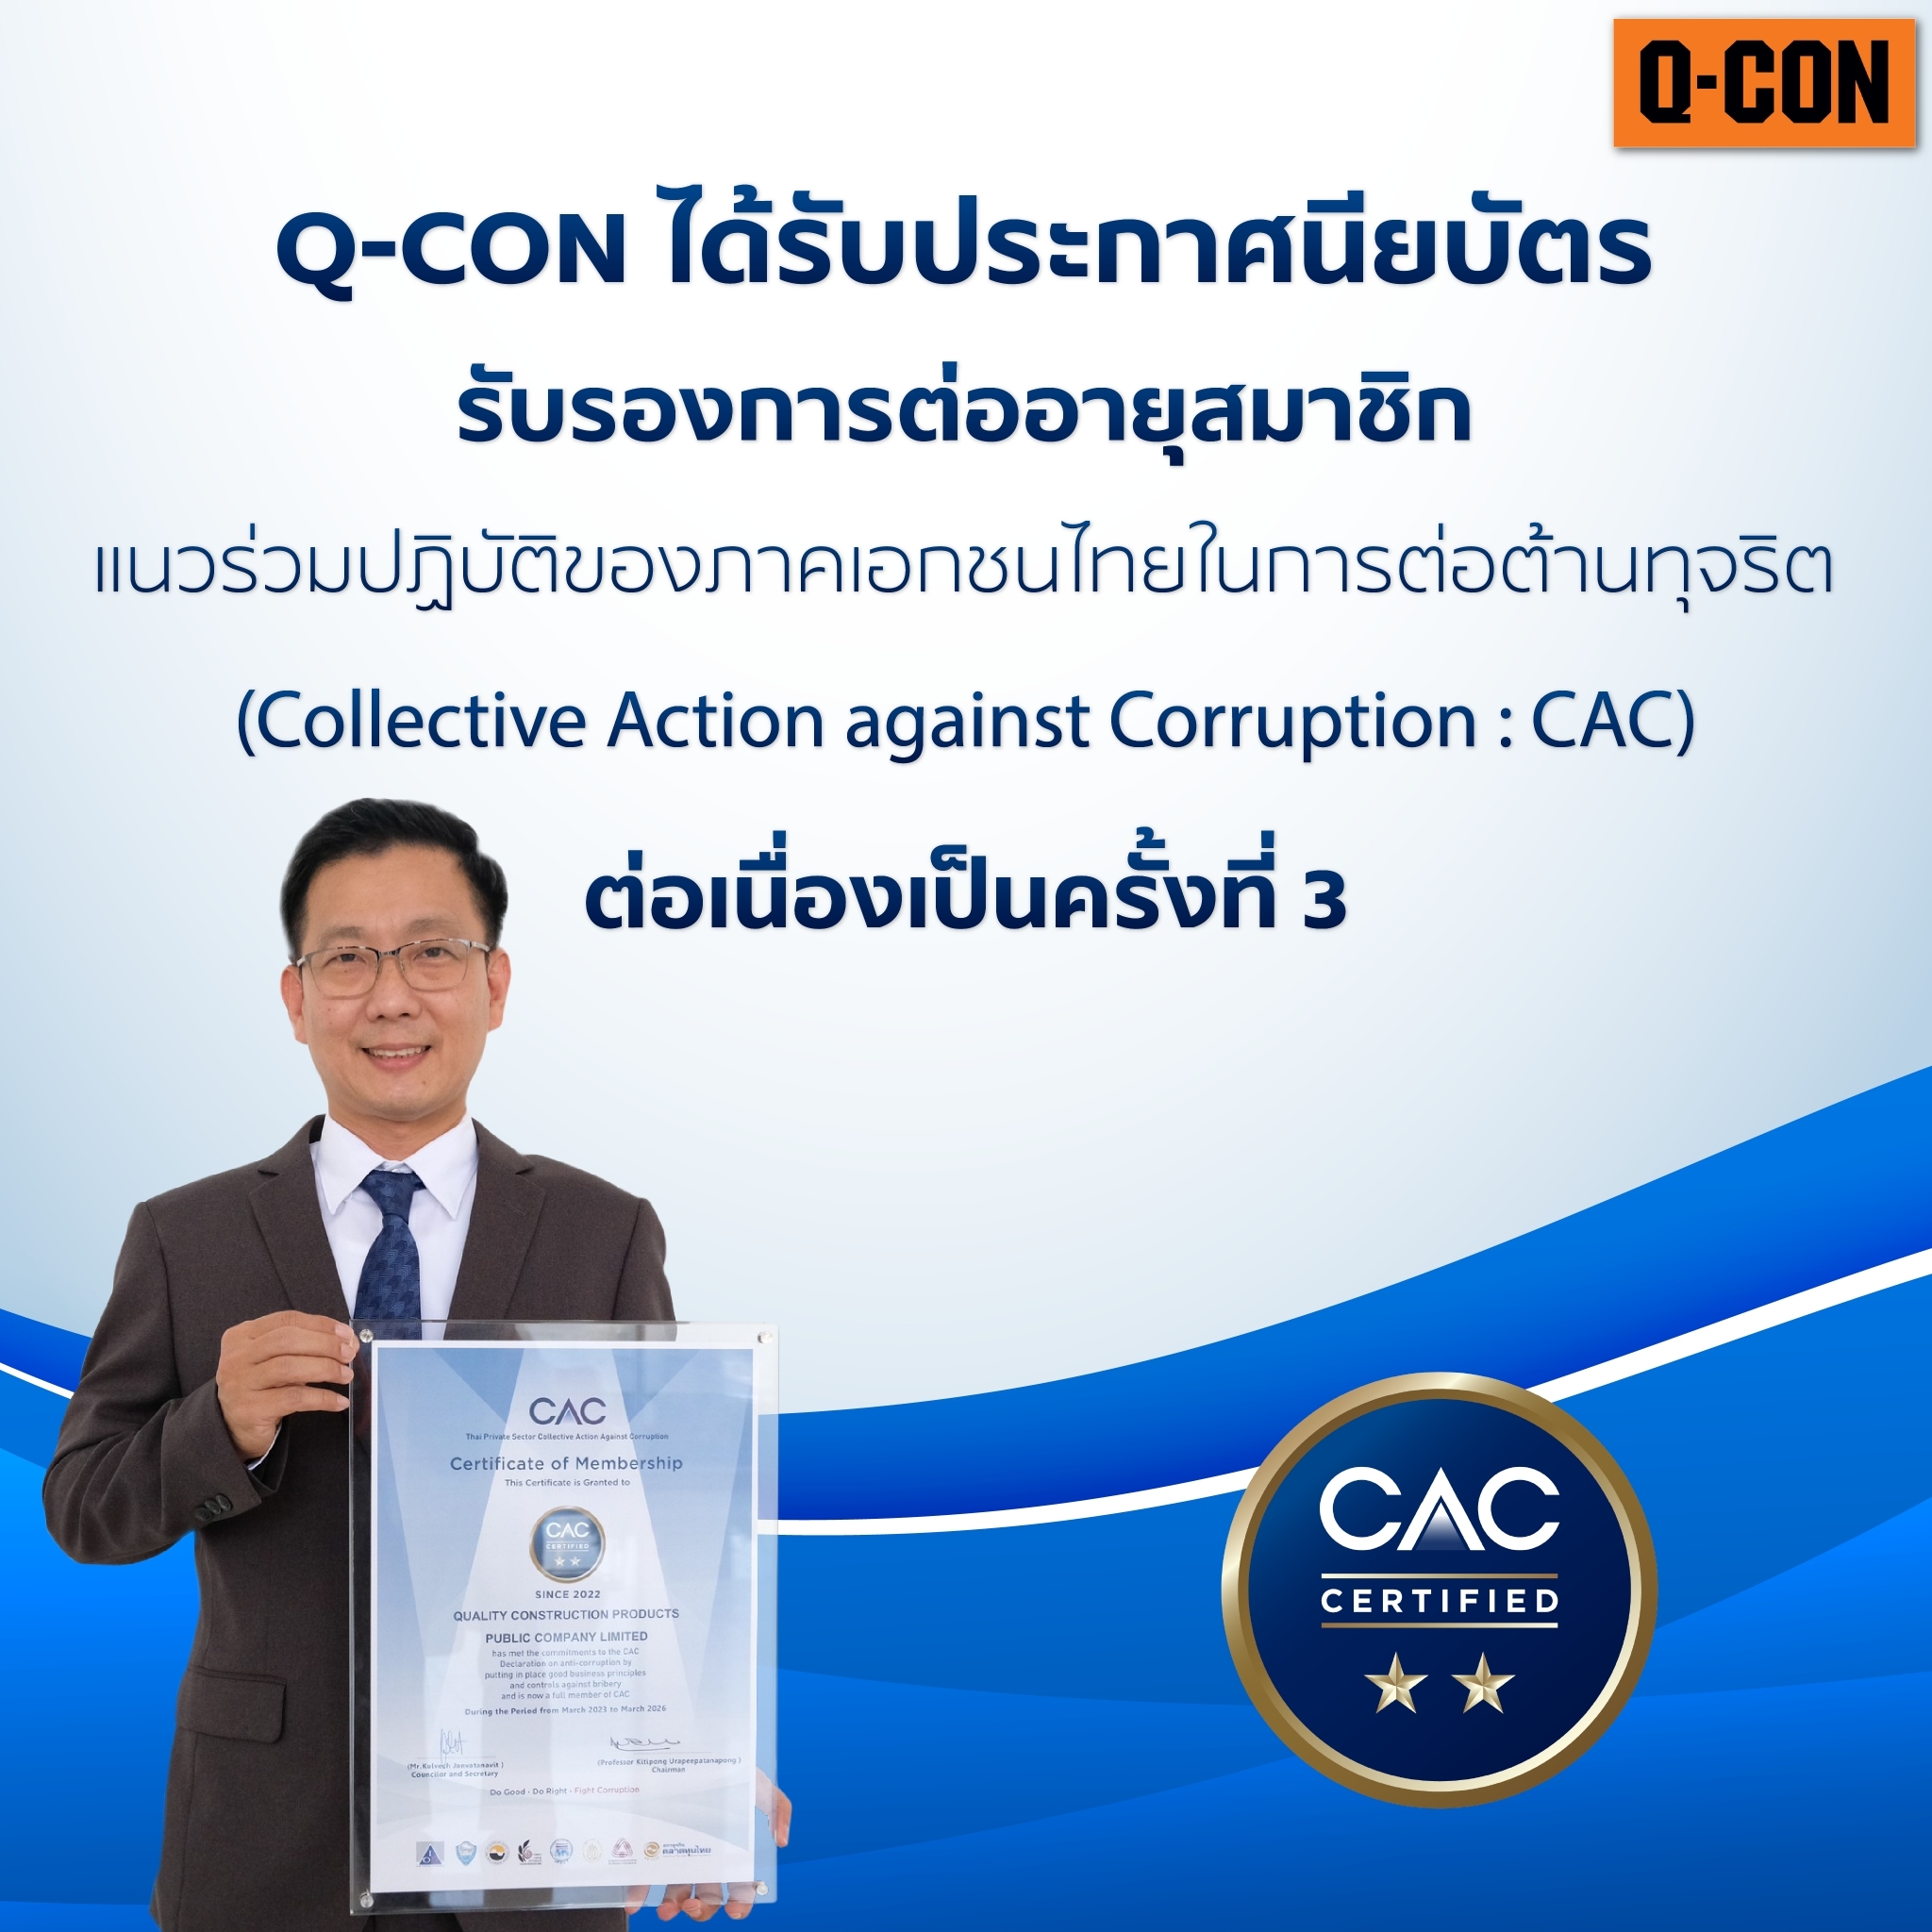 Q-CON รับใบประกาศนียบัตร “CAC” 3 ปี ตอกย้ำบริษัท “ธรรมาภิบาล”